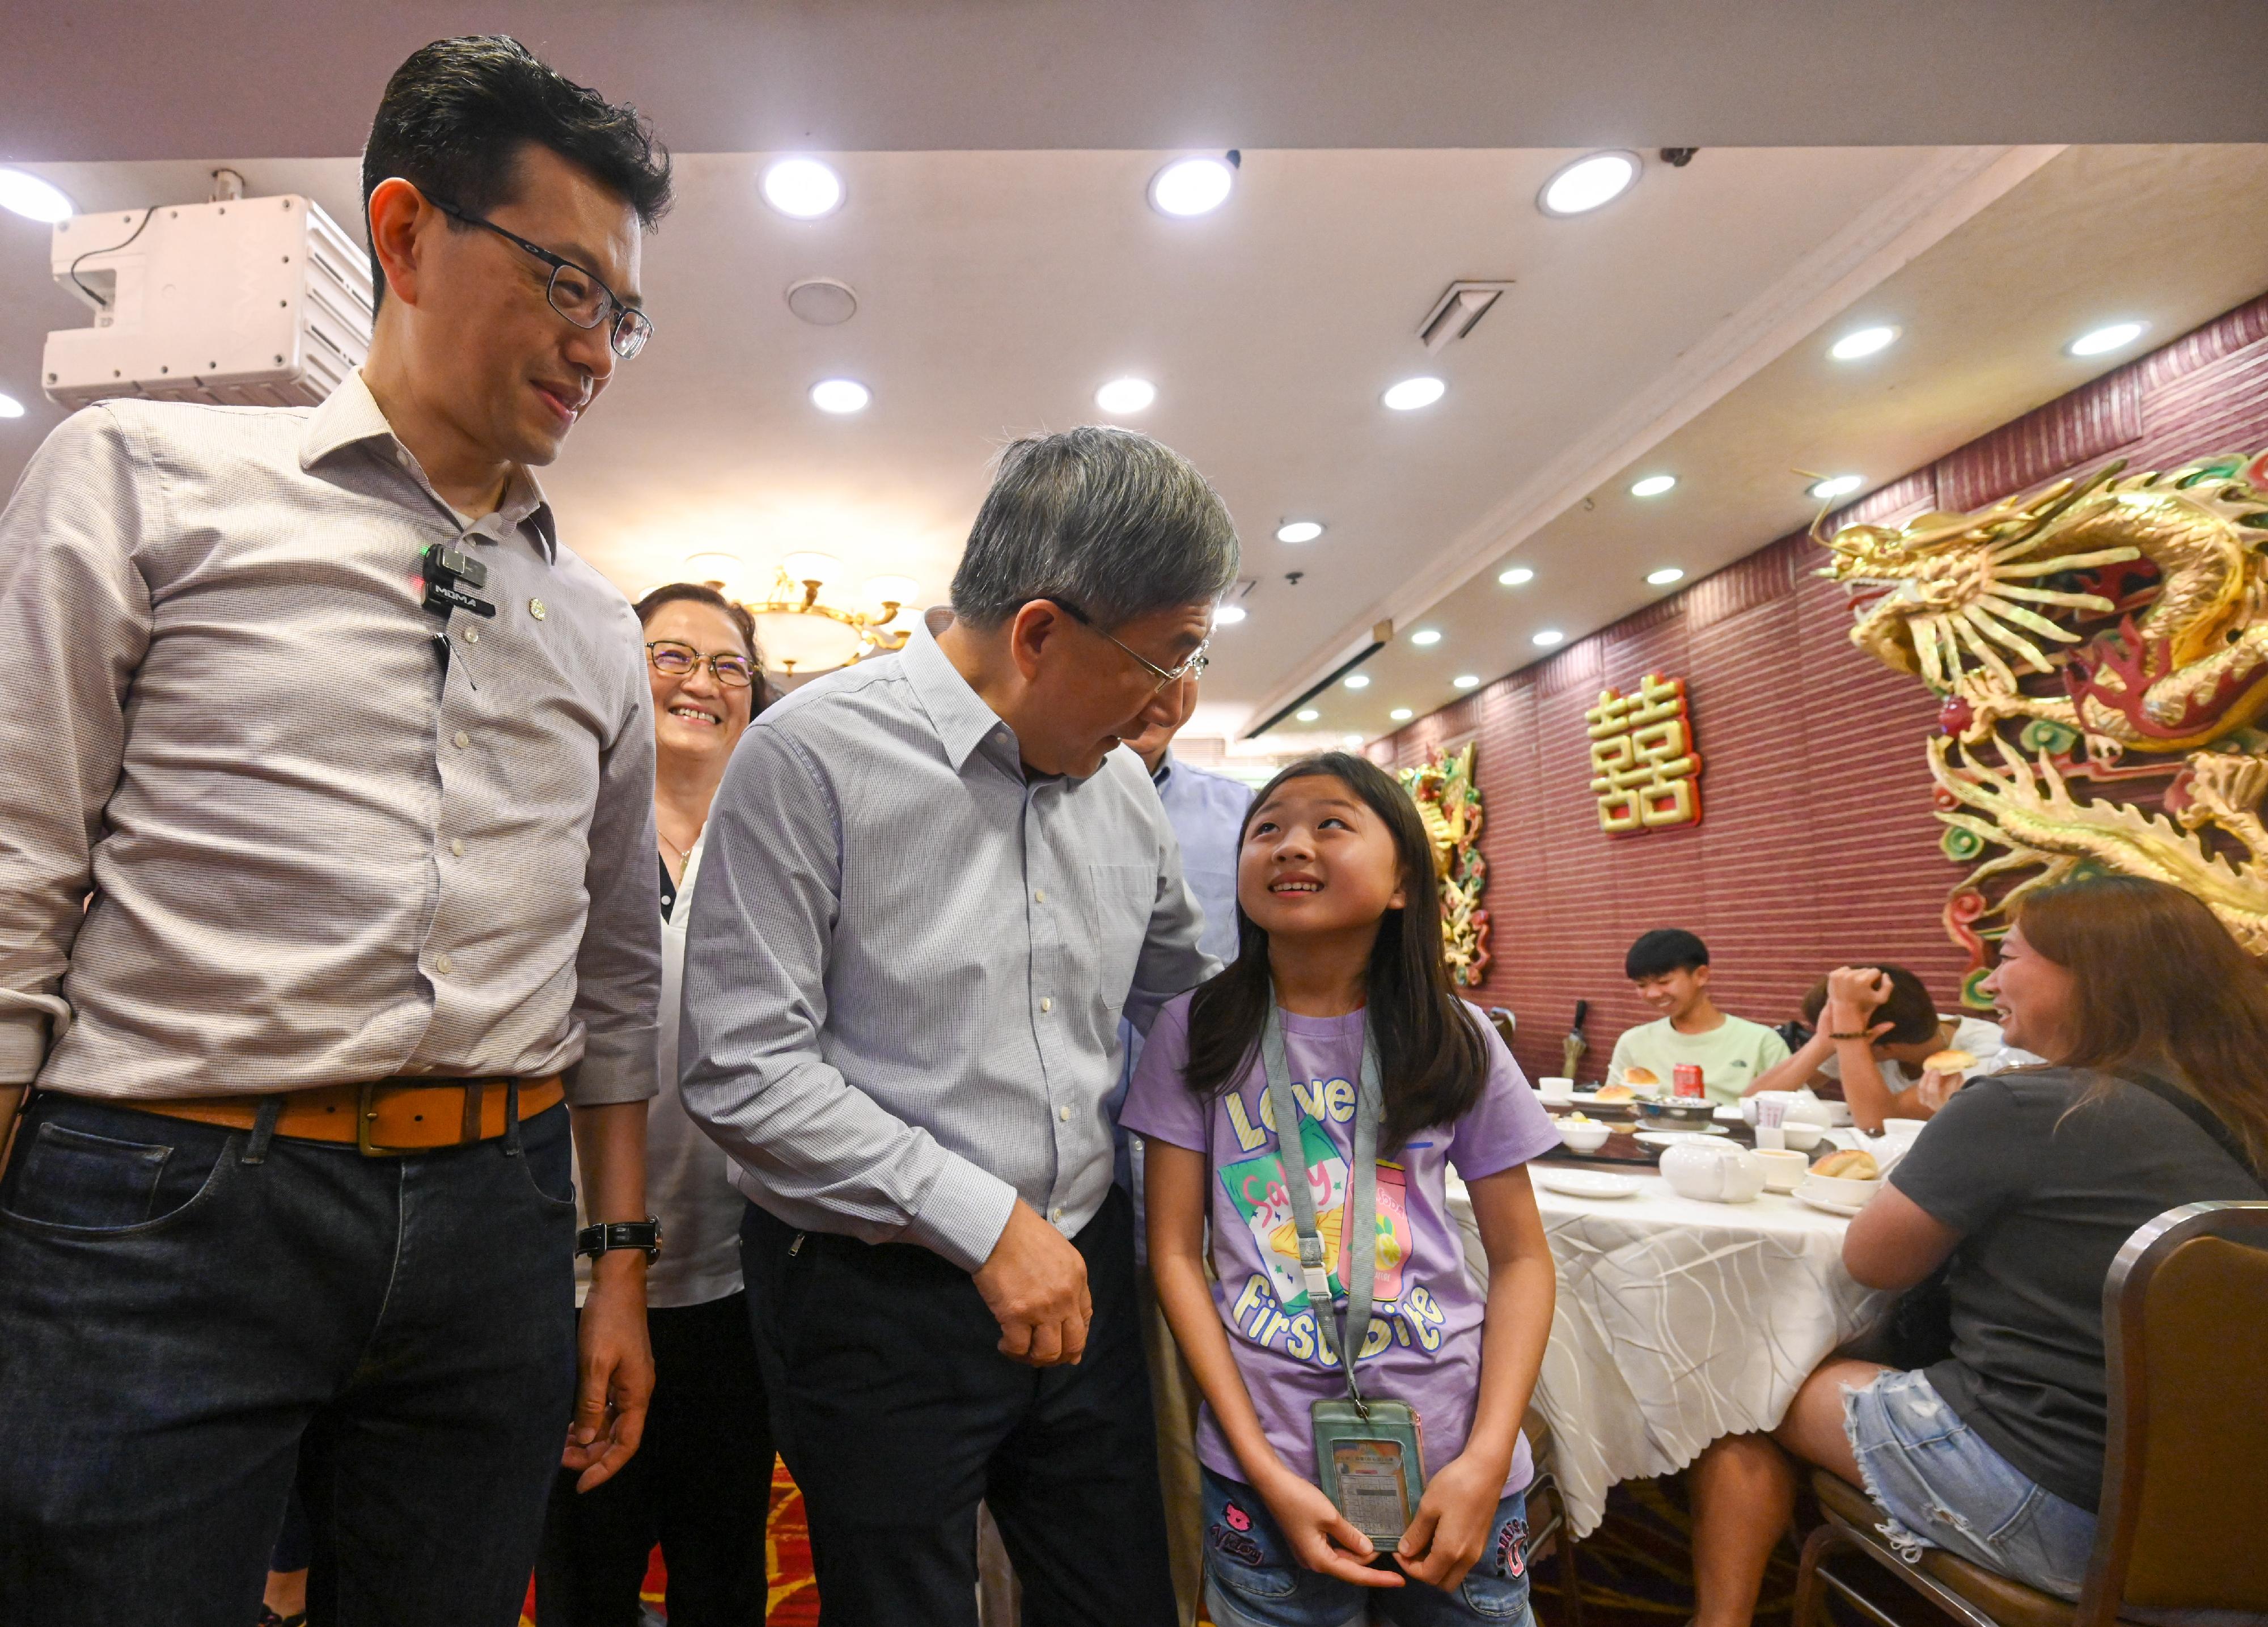 政務司副司長卓永興今日（五月一日）出席香港工會聯合會（工聯會）「五·一」勞動週系列活動，到旺角一家酒樓探訪慰問飲食業職工。圖示卓永興與小茶客合照。